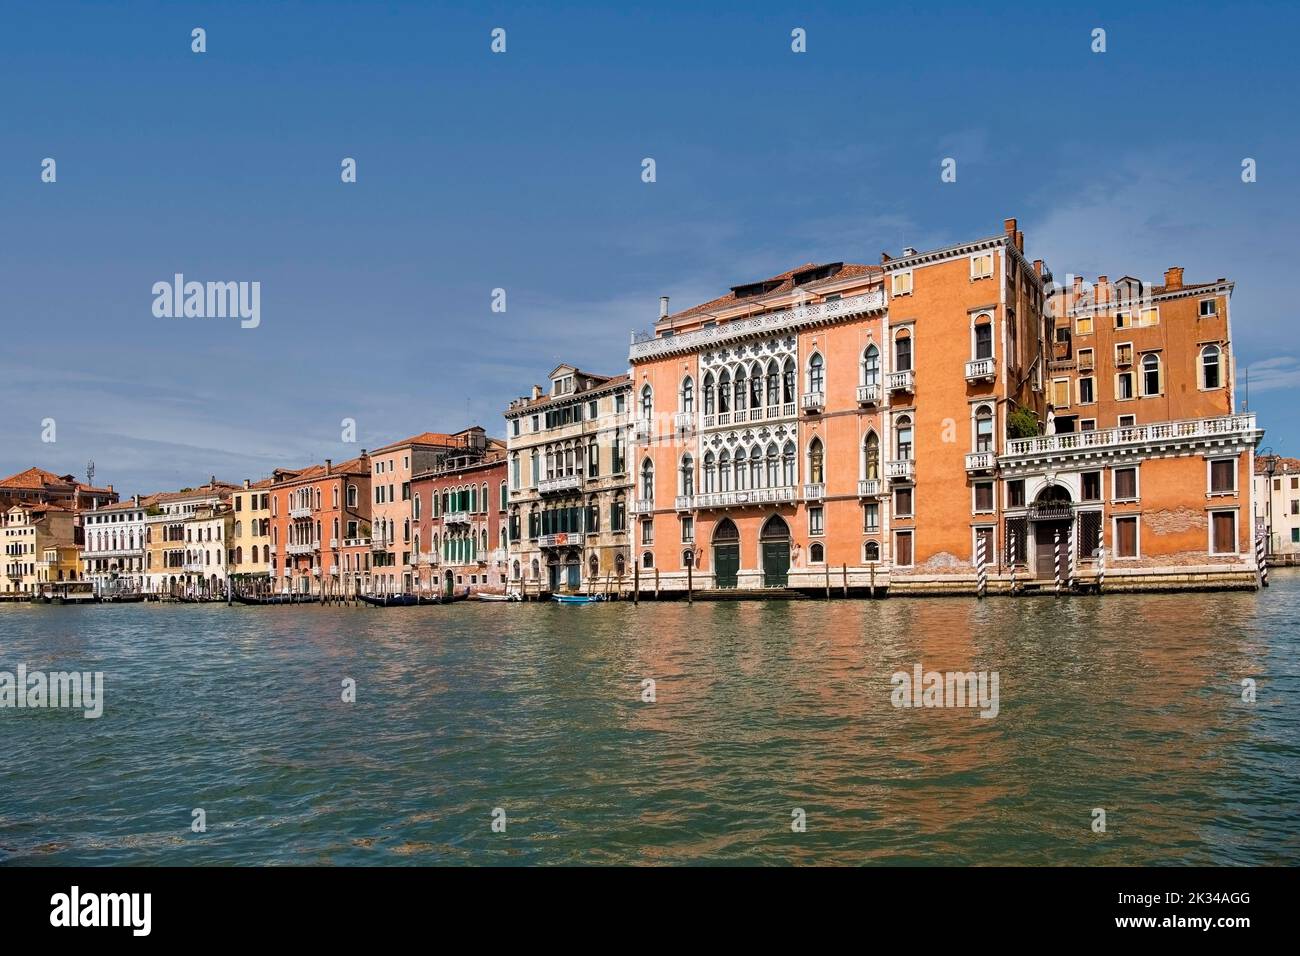 Historic Palaces. Palazzi, on the Grand Canal Venice, Veneto Region, Italy Stock Photo